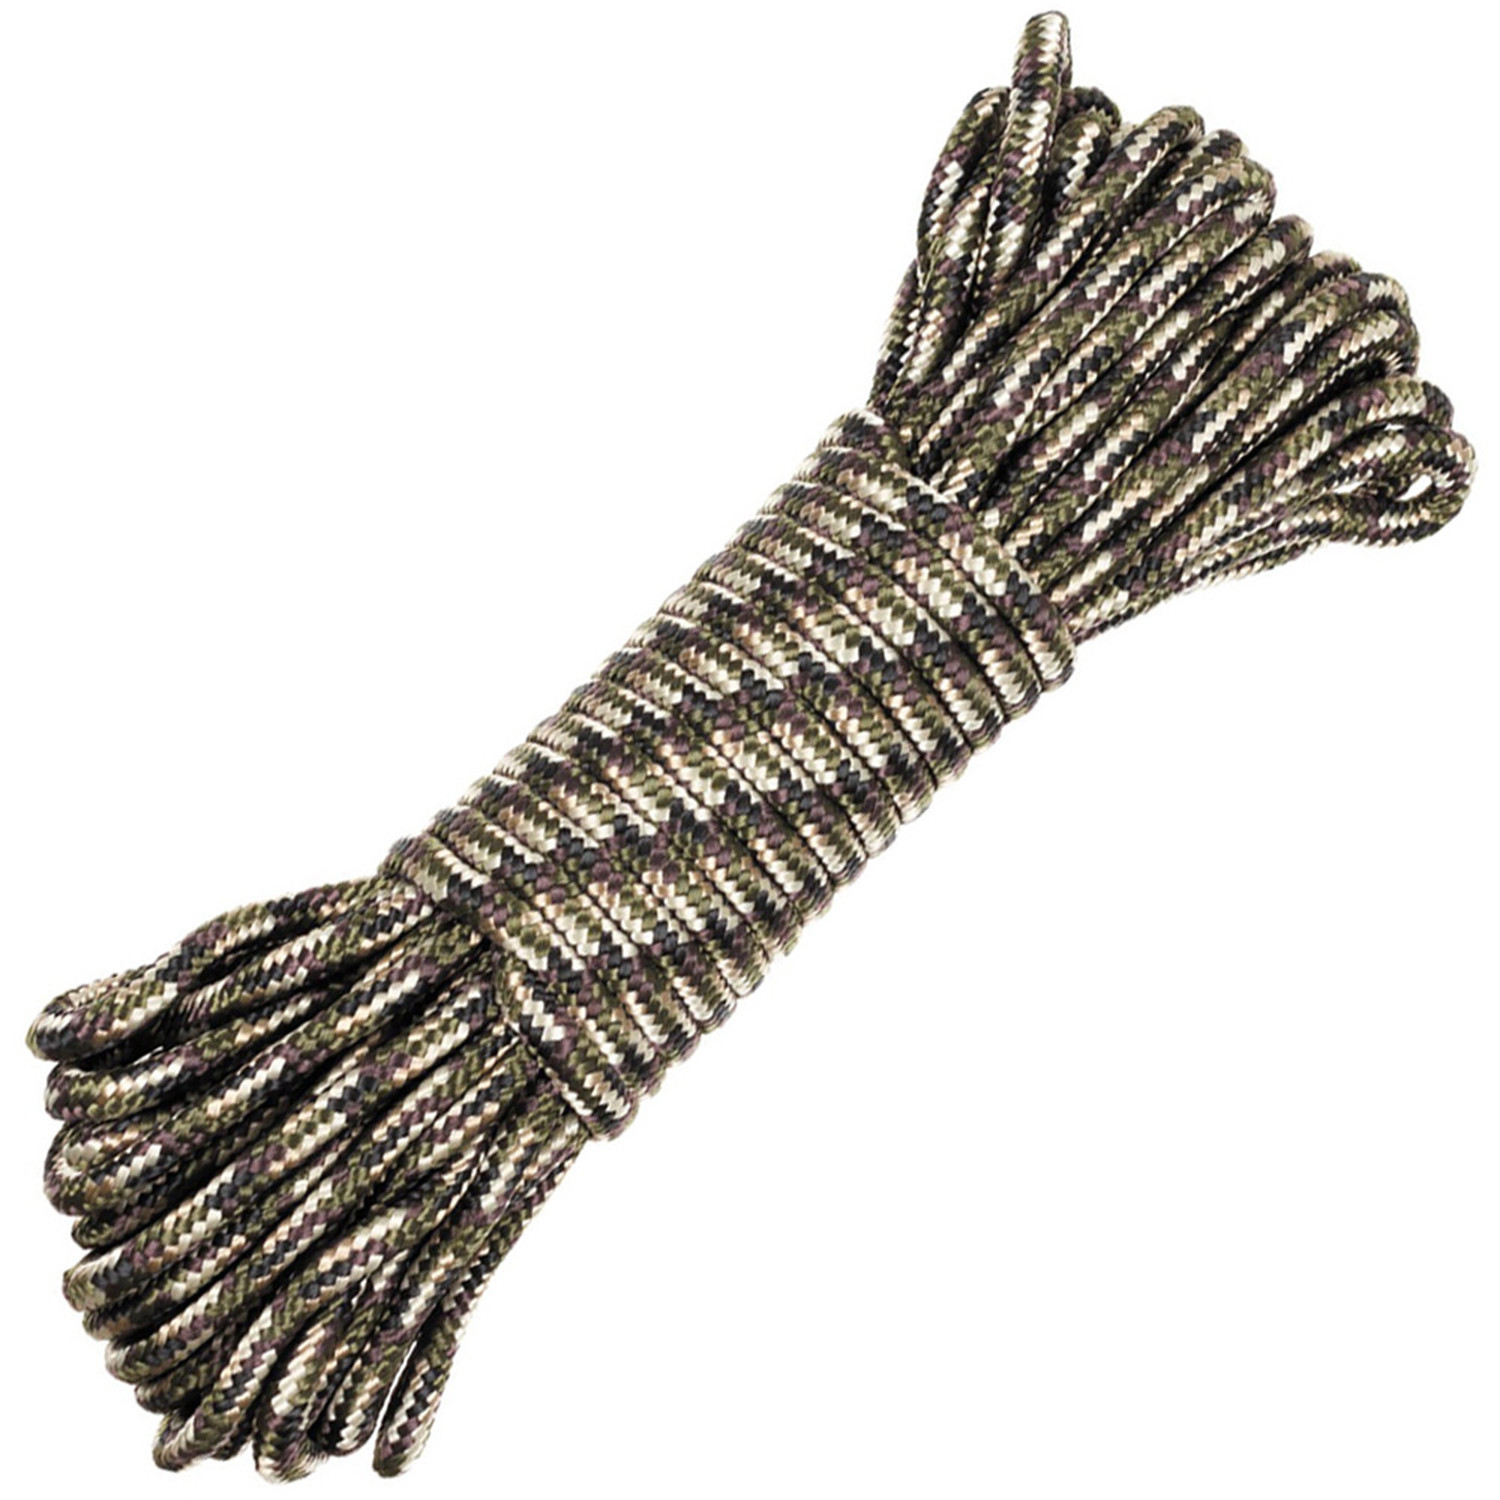 Seil mit 3 mm Durchmesser in Tarn (Camo)